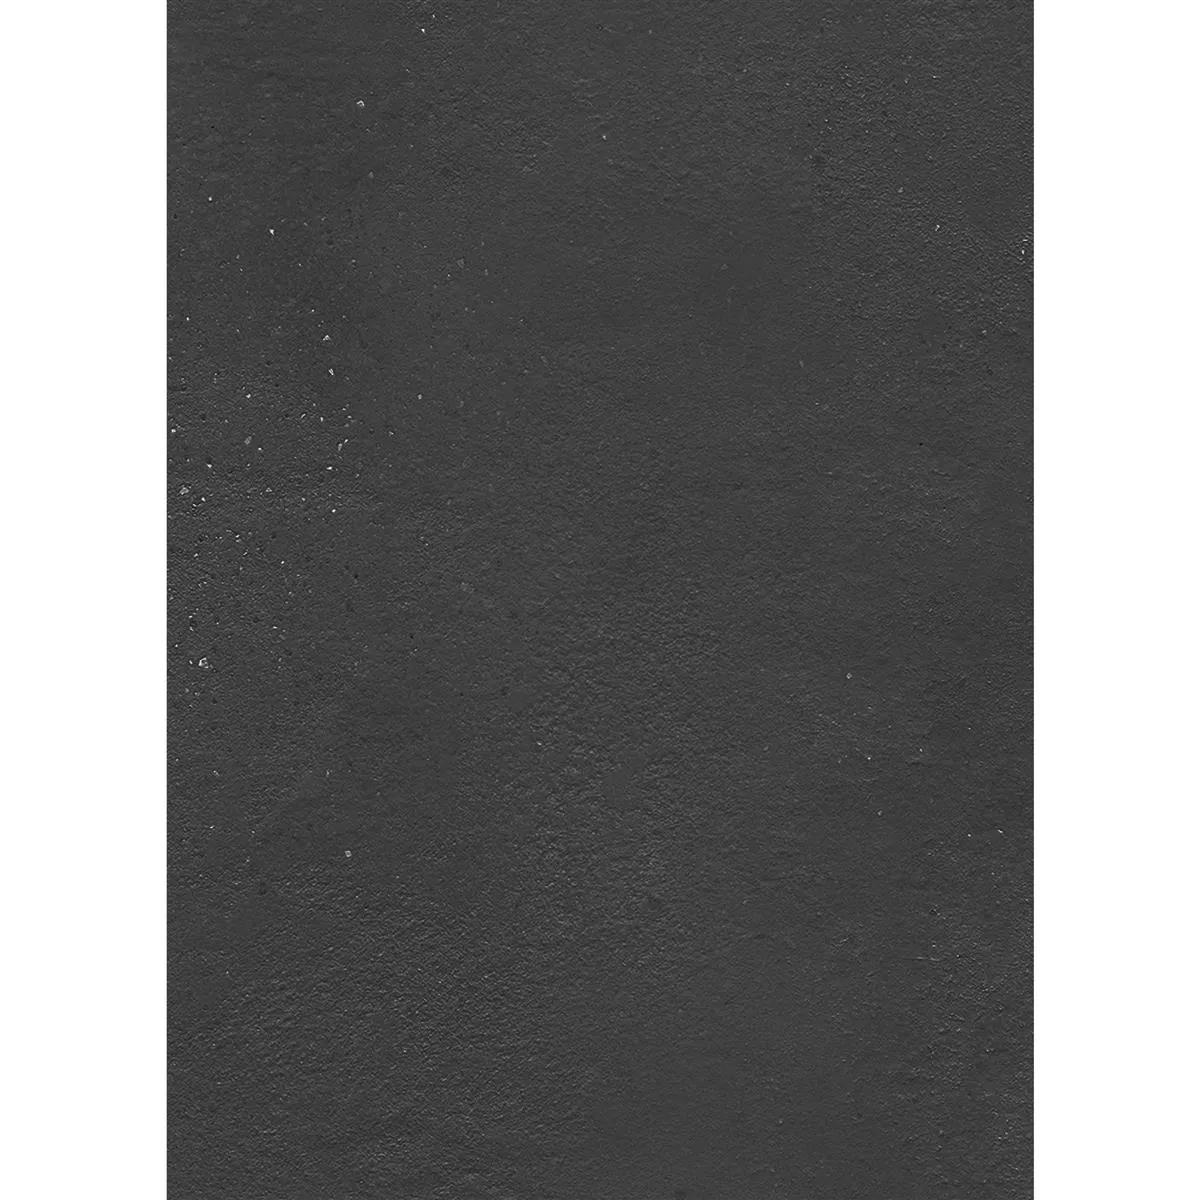 Πρότυπο από Πλακάκι Δαπέδου Malibu Συγκεκριμένη Εμφάνιση Ανθρακίτης 60x120cm